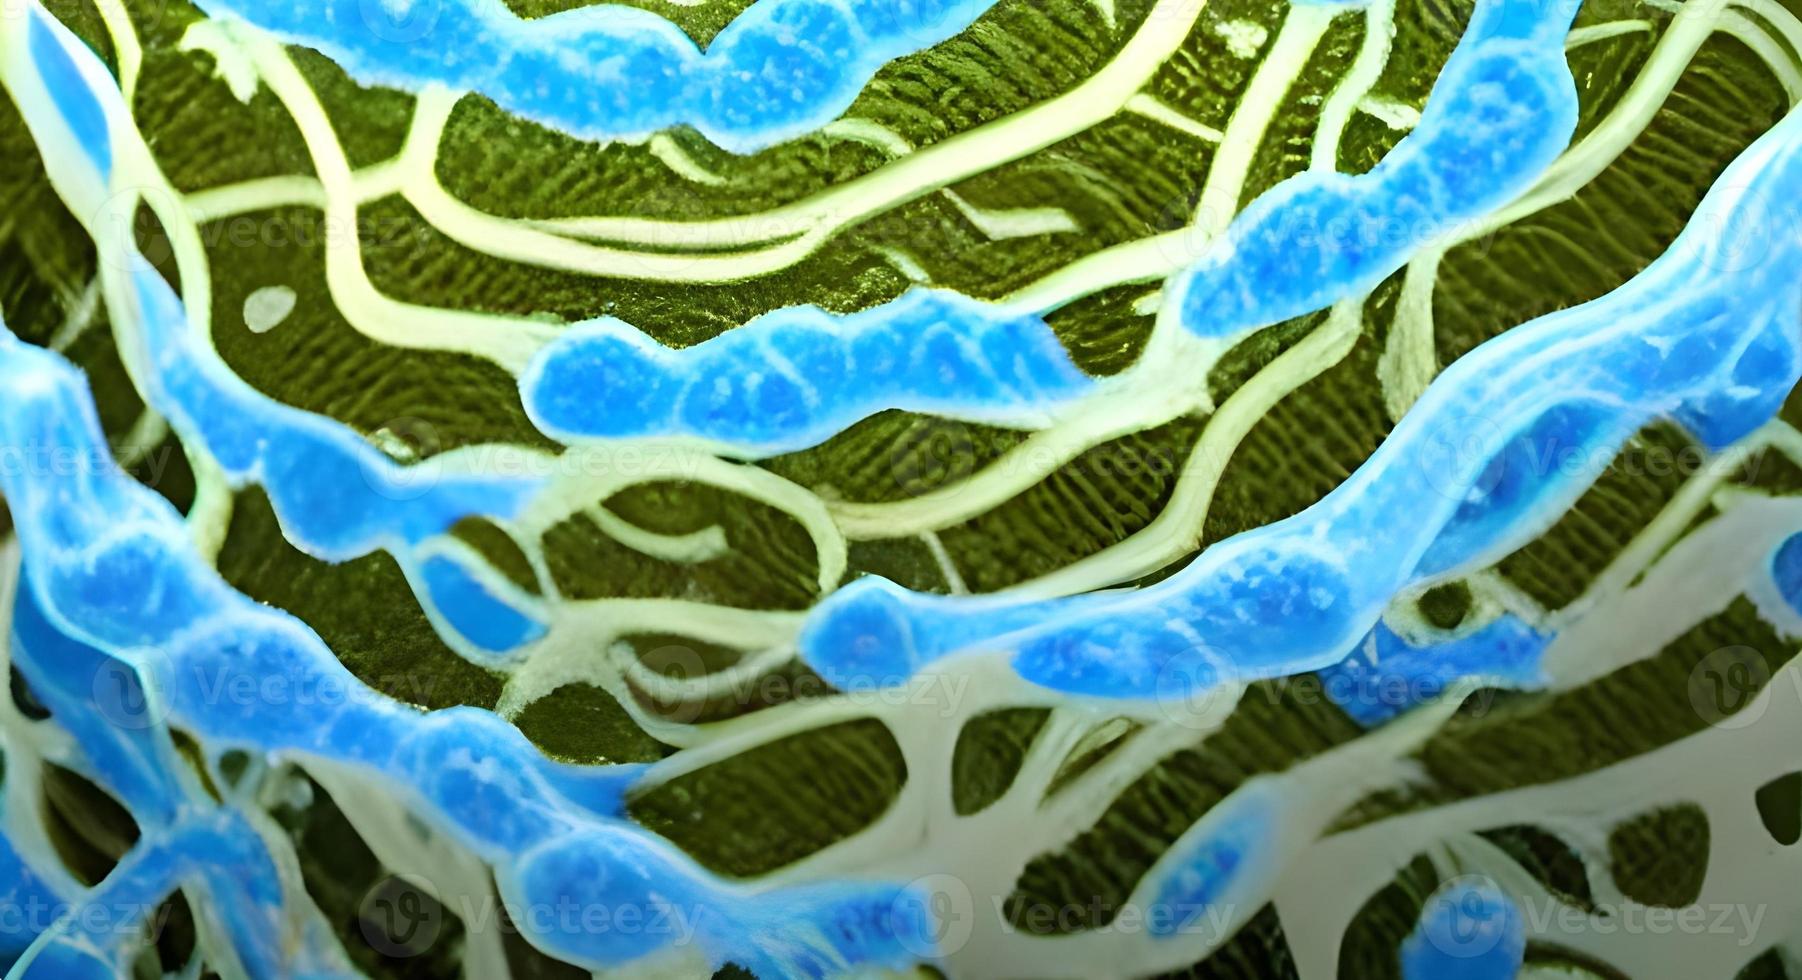 virus microscopiques réalistes de diverses formes sur fond flou bleu illustration de modèle sans couture photo